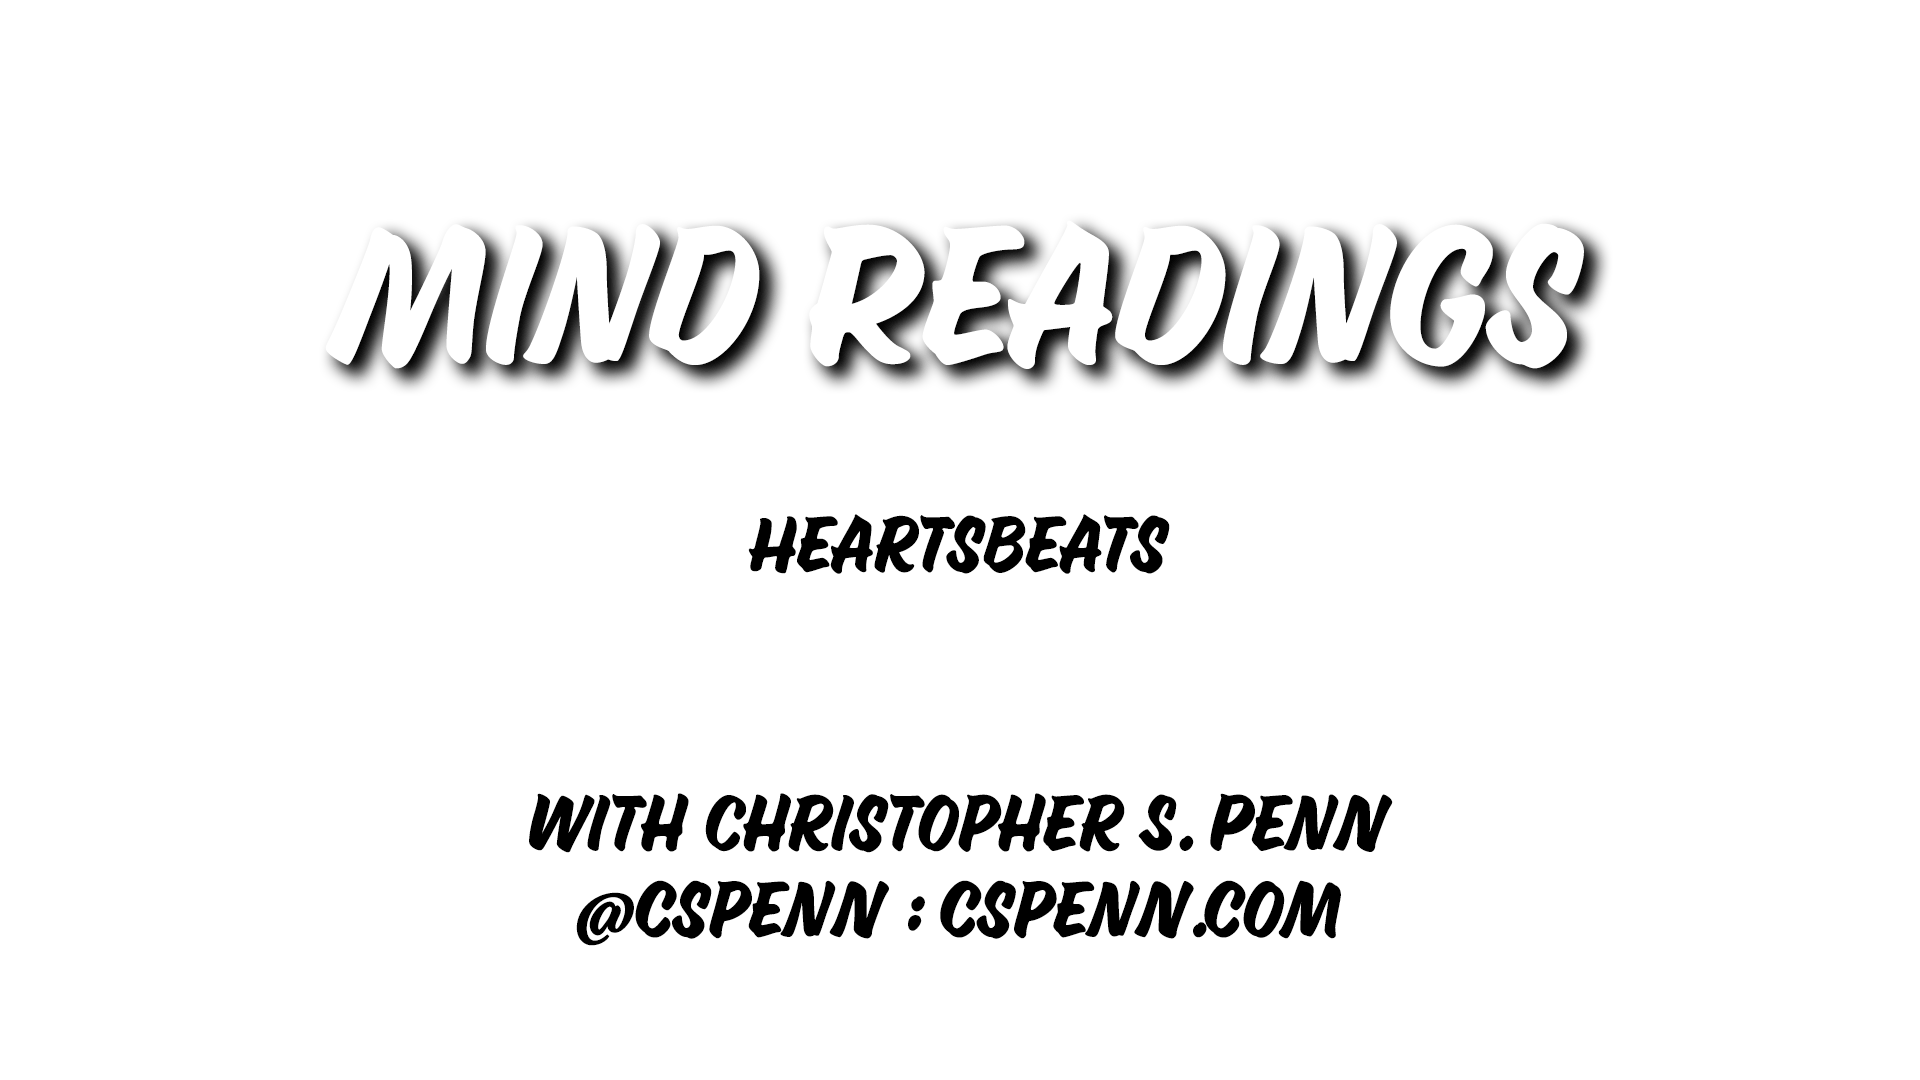 Mind Readings: Heartbeats